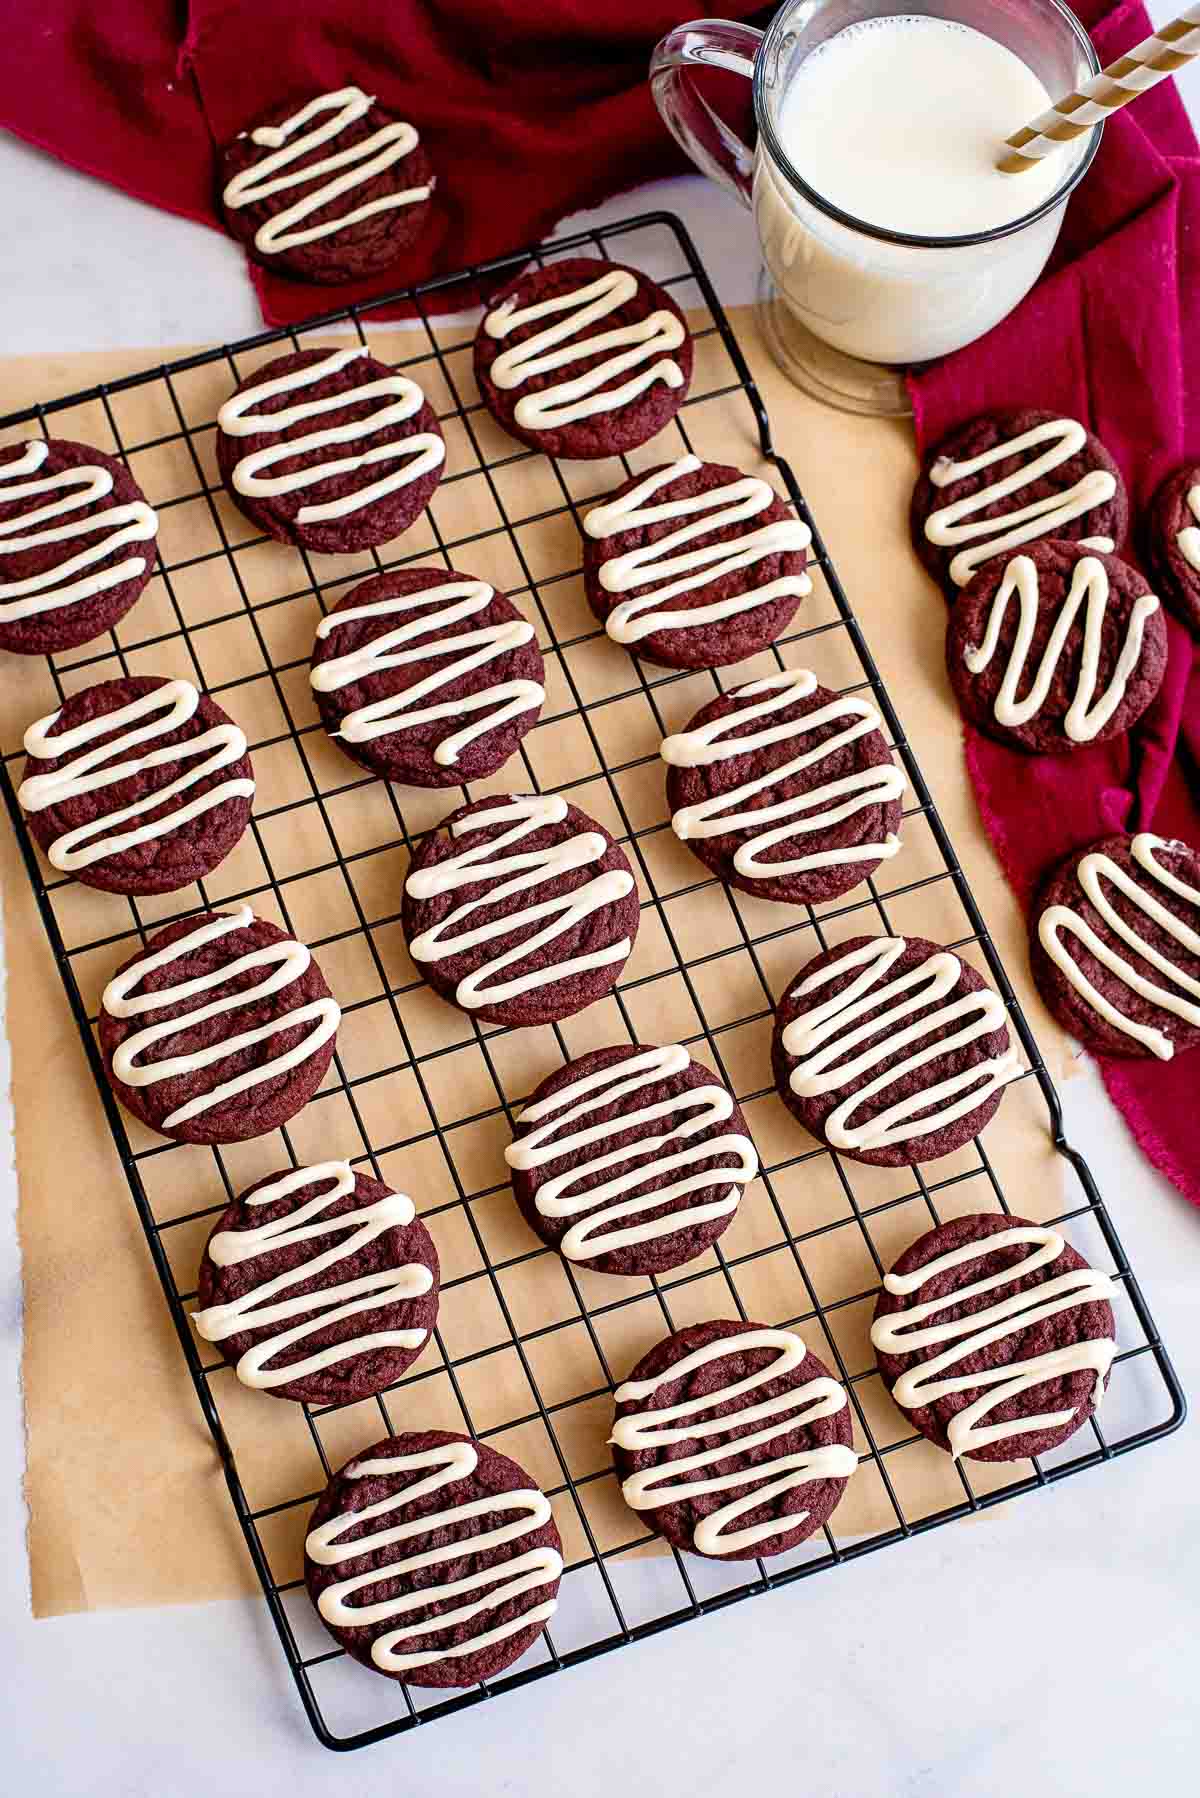 red velvet cookies glazed on cooling rack.